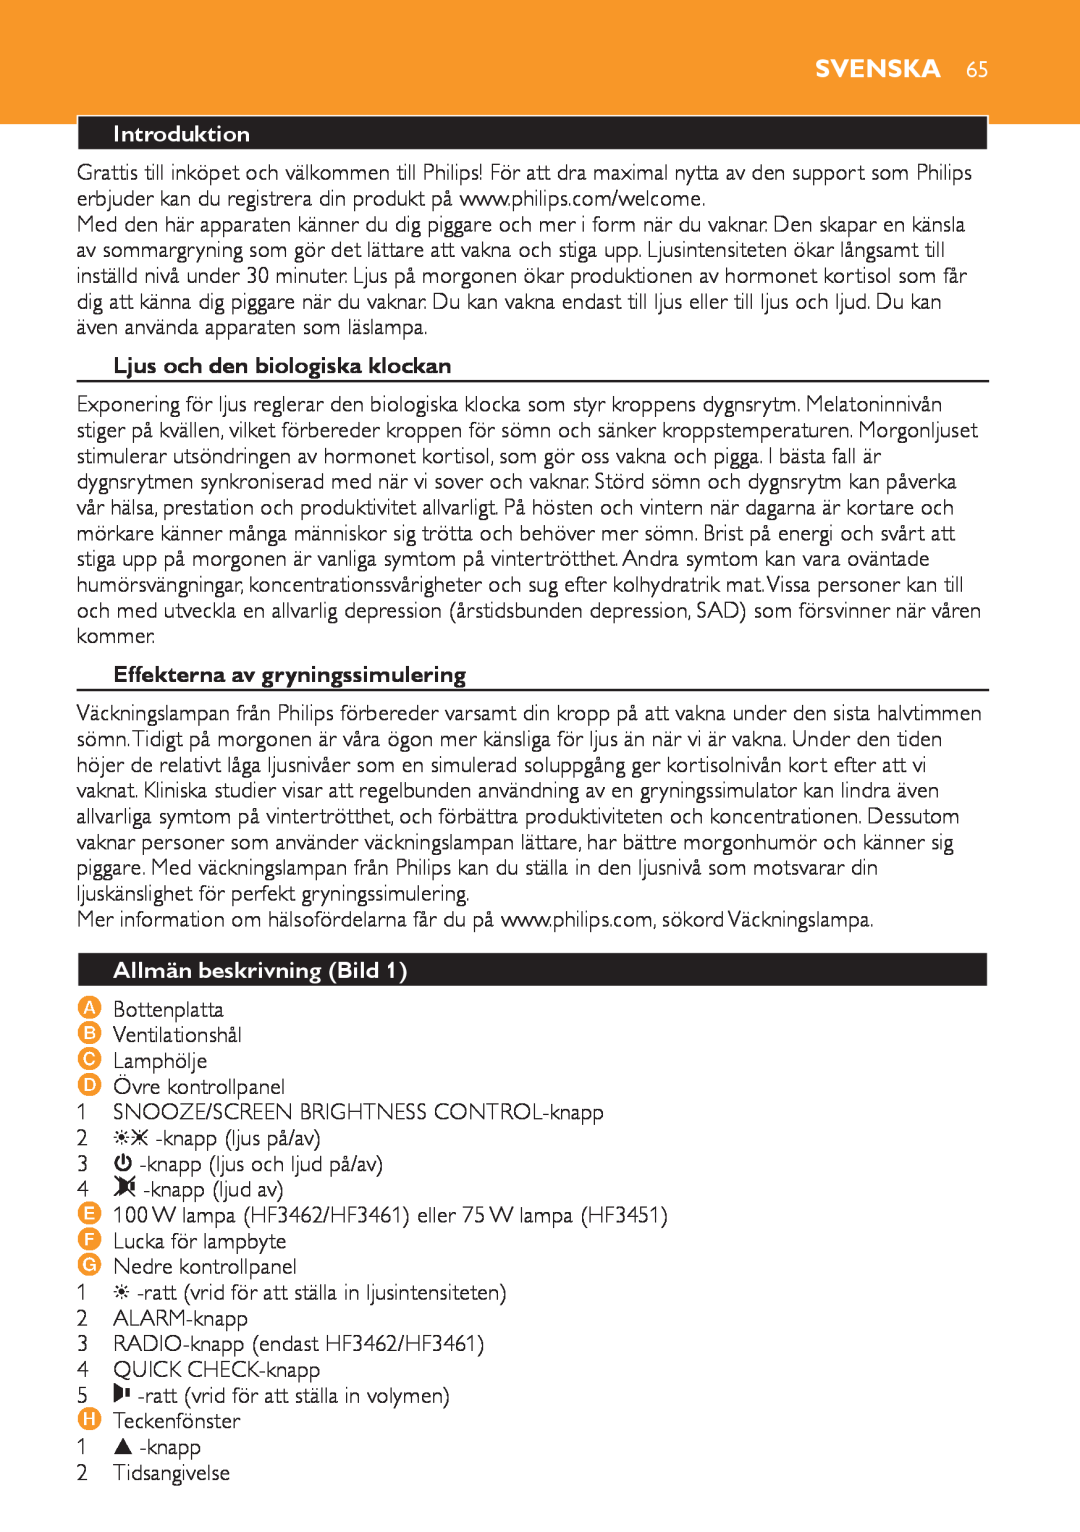 Philips HF3451 manual Svenska, Ljus och den biologiska klockan, Effekterna av gryningssimulering, Allmän beskrivning Bild 